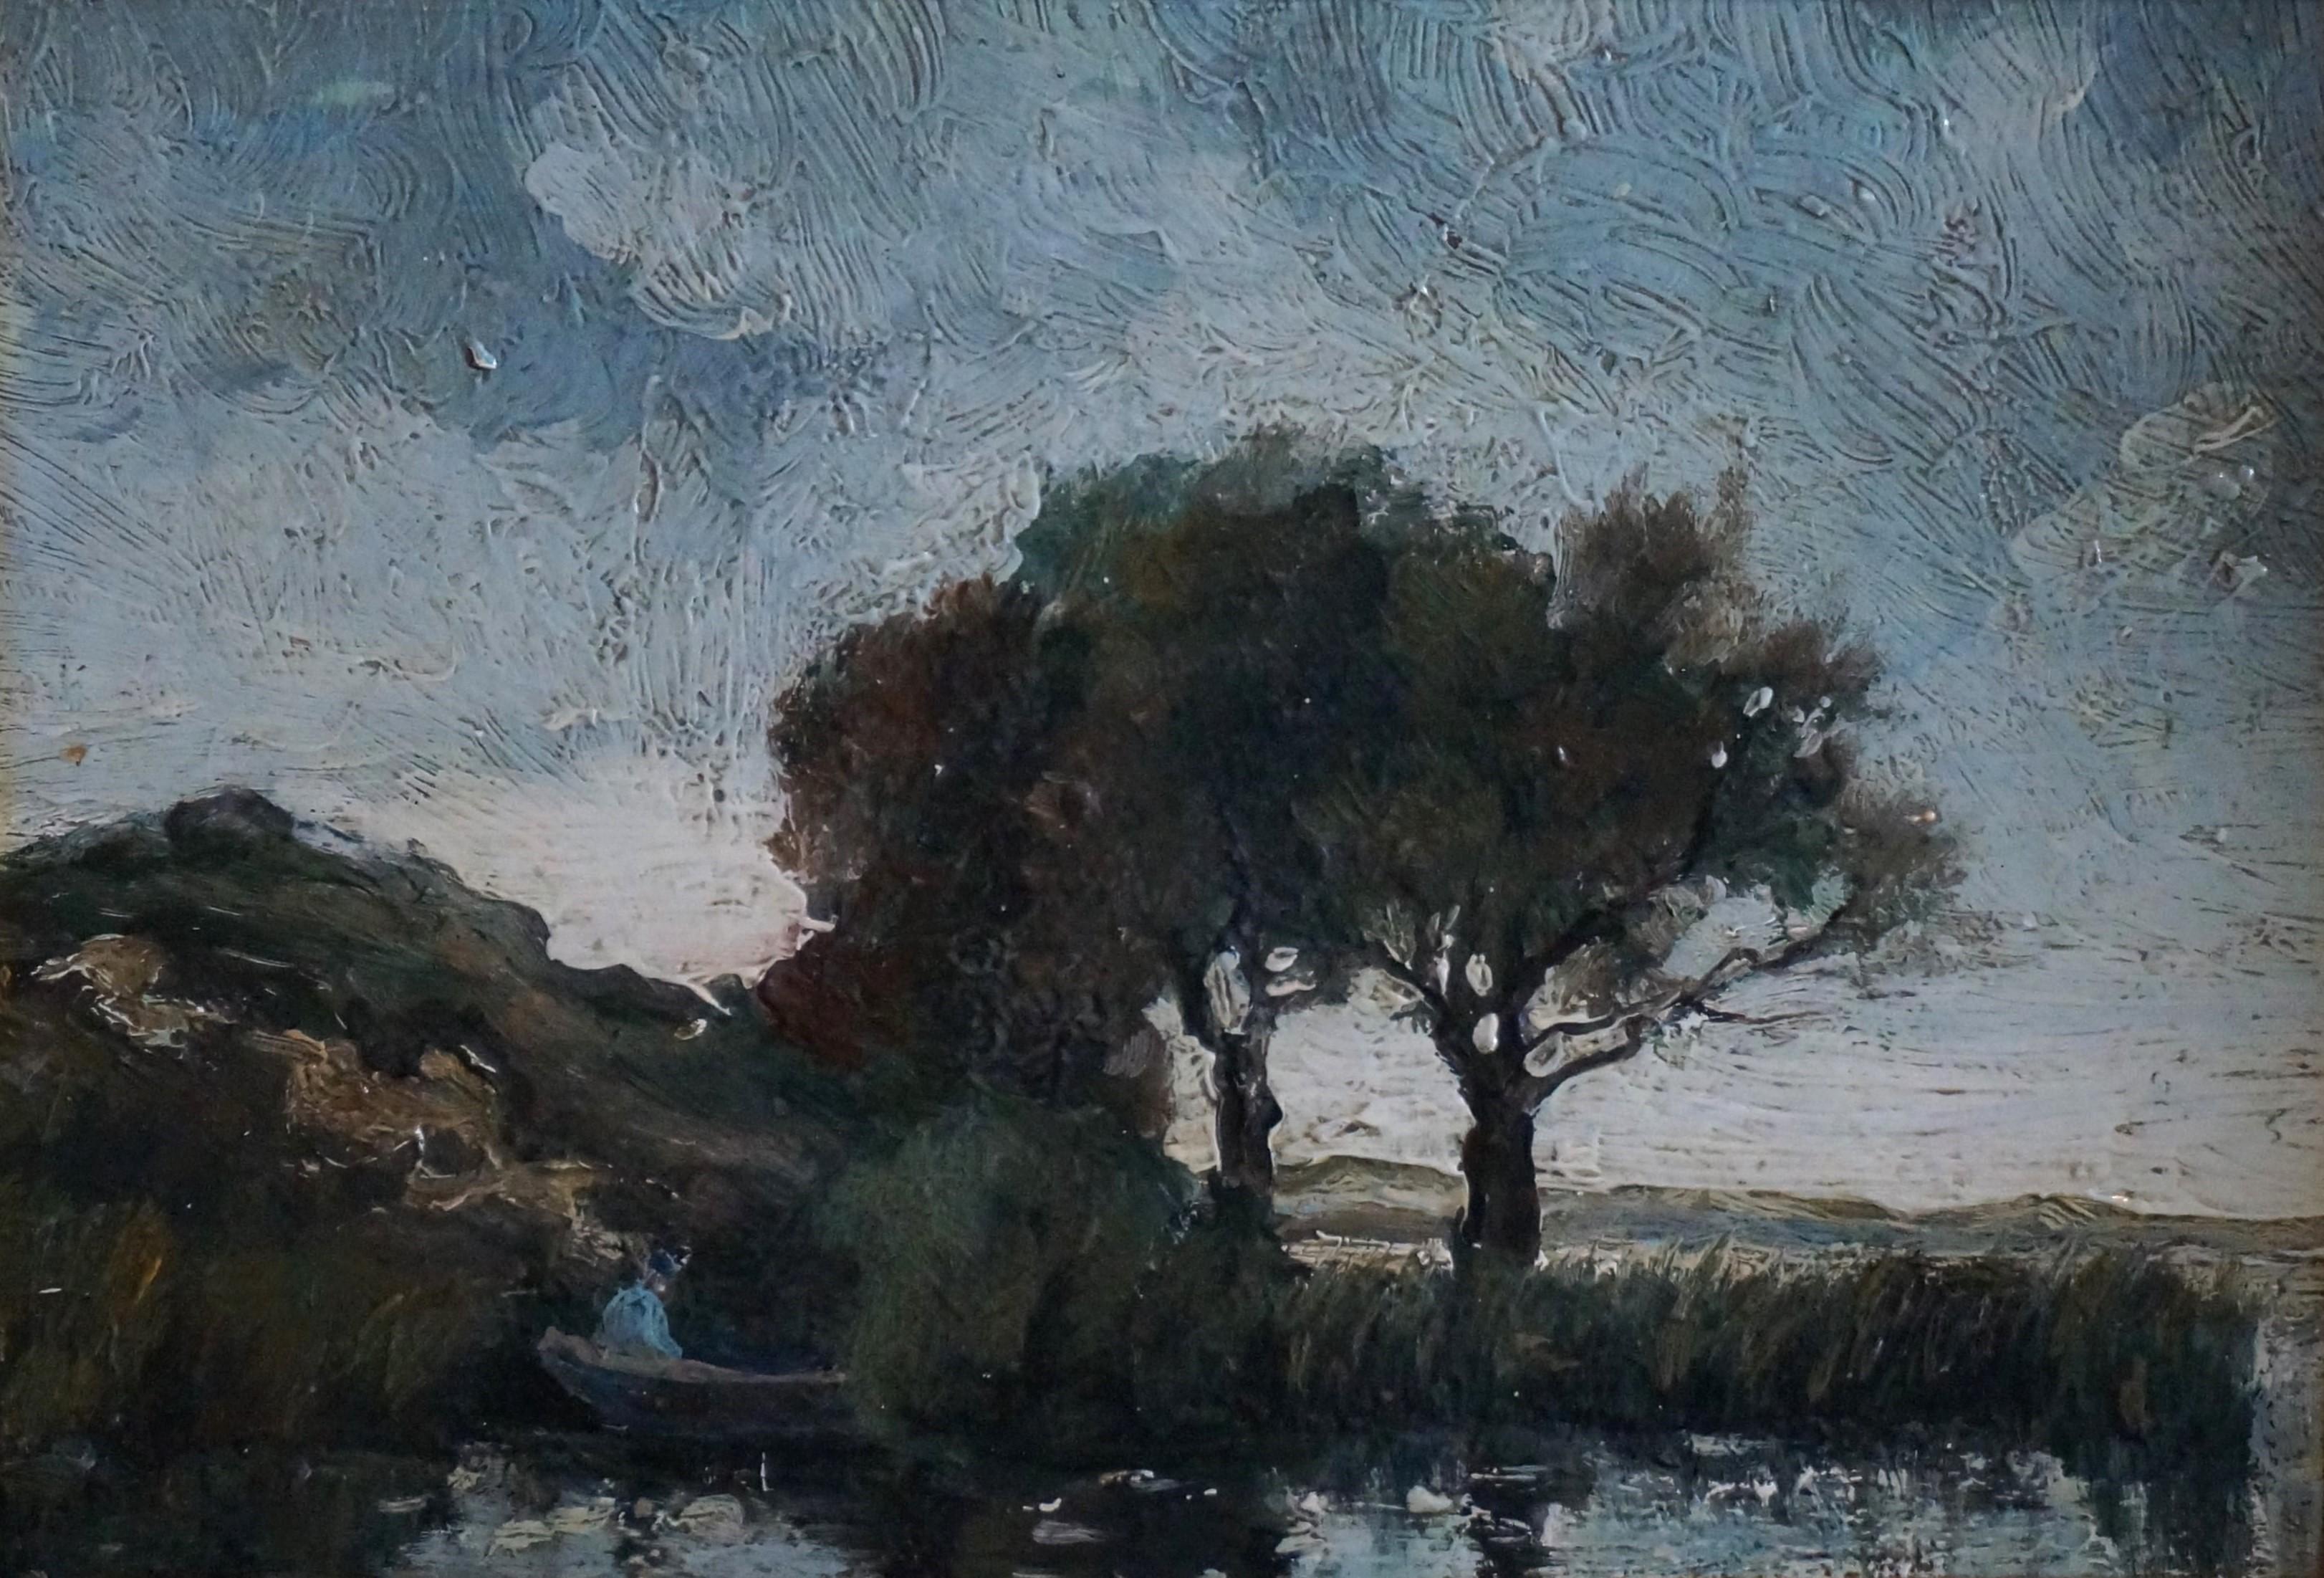 Théophile de Bock Landscape Painting - Landscape with fisherman, impressionist painting, school of Barbizon/The Hague 